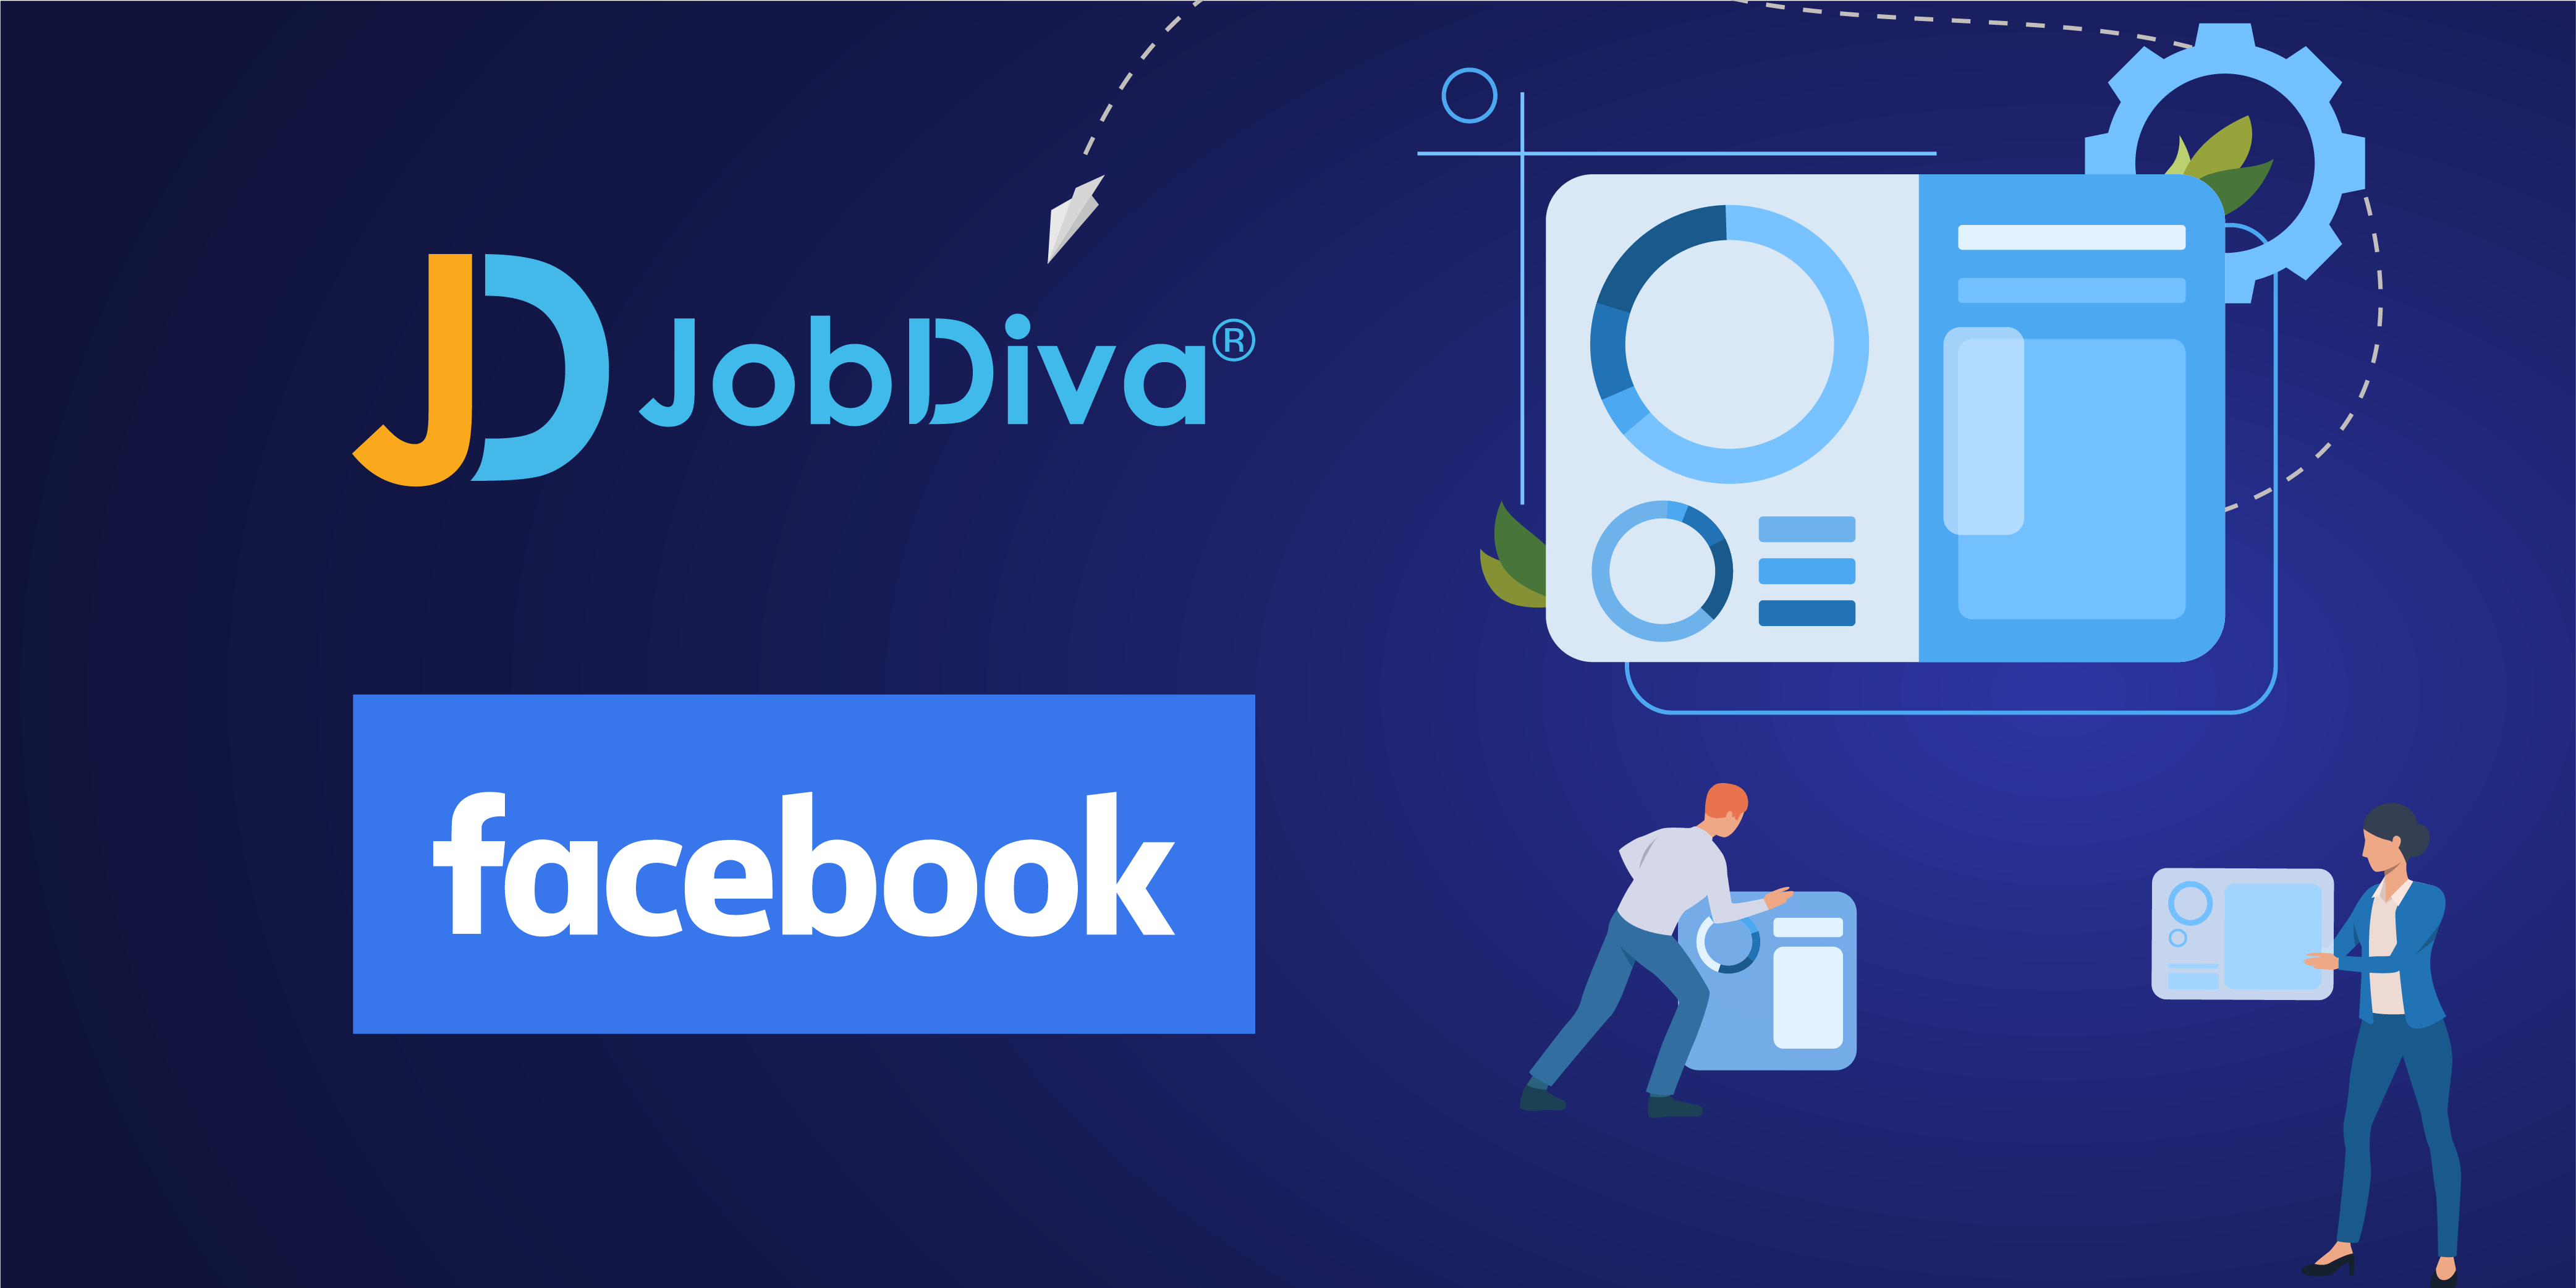 JobDiva 與 Jobs on Facebook 整合